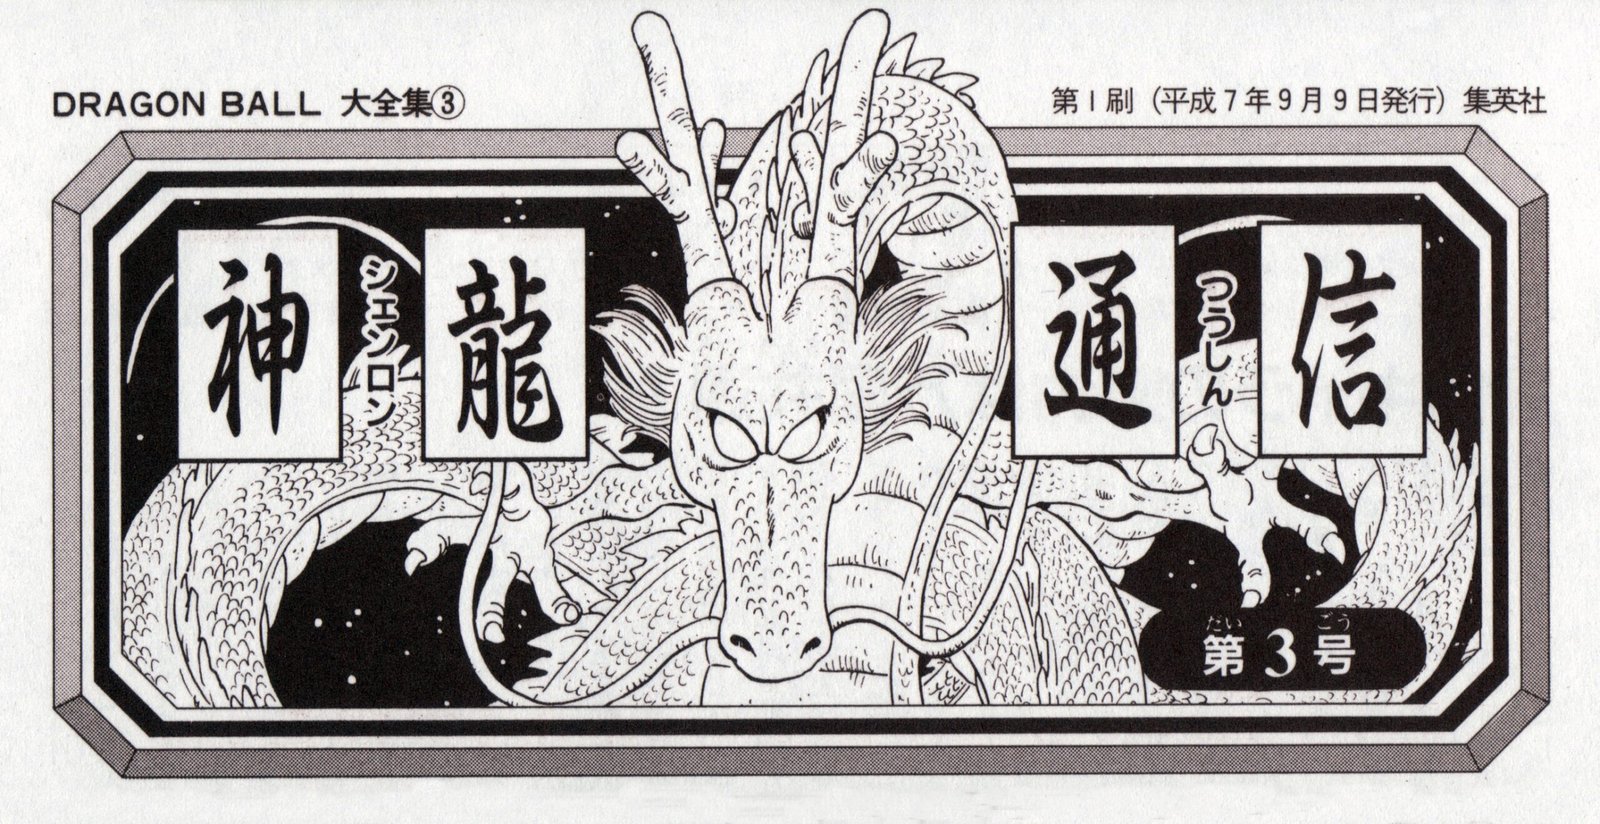 Torneio do poder  Dragon ball super manga, Dragon ball art, Dragon ball  artwork